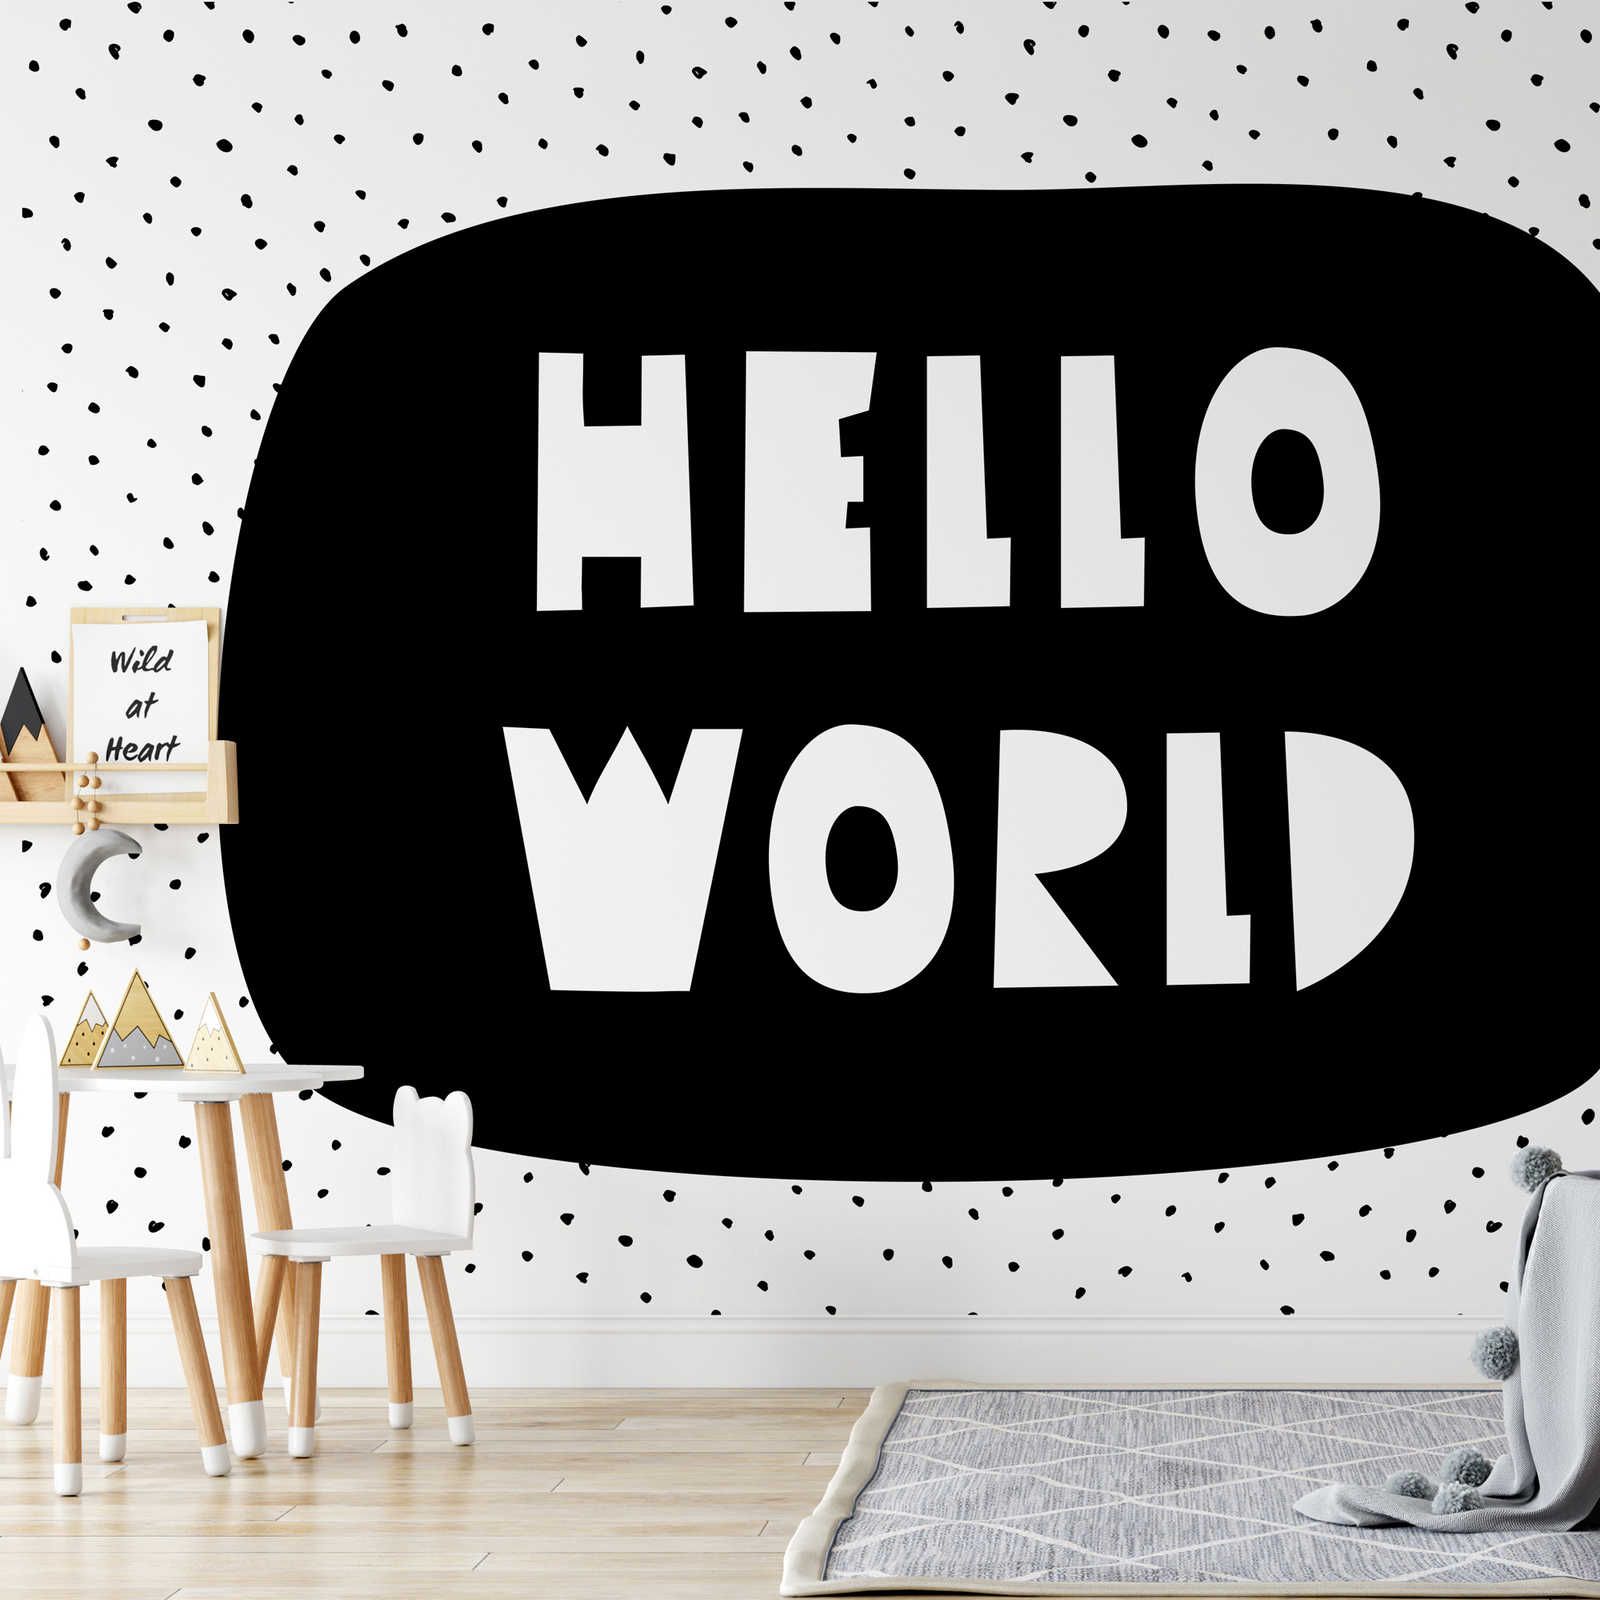 Fototapete fürs Kinderzimmer mit Schriftzug "Hello World" – Glattes & perlmutt-schimmerndes Vlies
